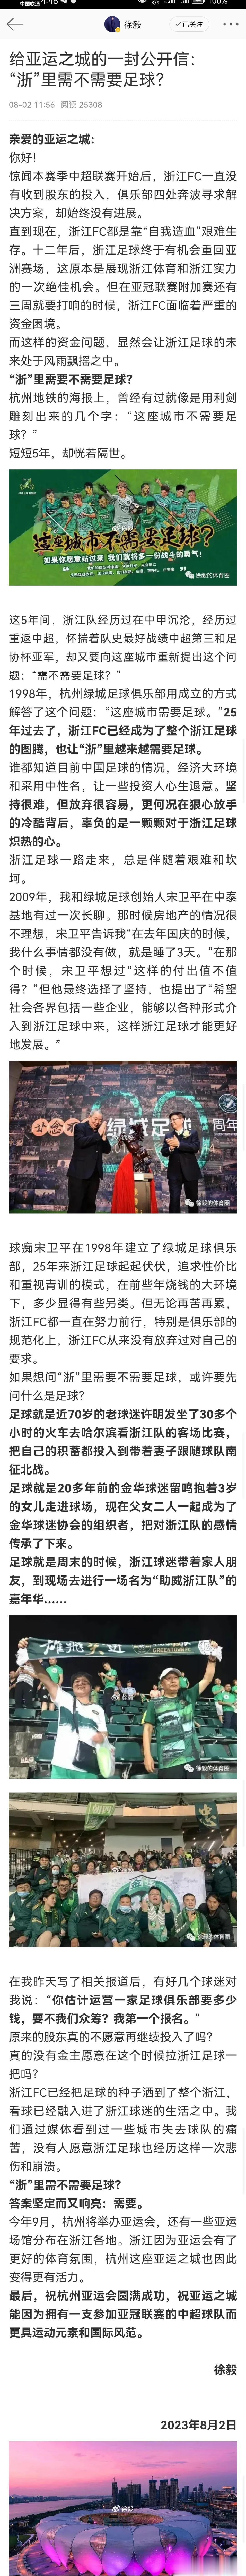 记者:浙江队遭遇资金困难，希望得到重视和支援

记者徐毅:本赛季中超联赛开始后，